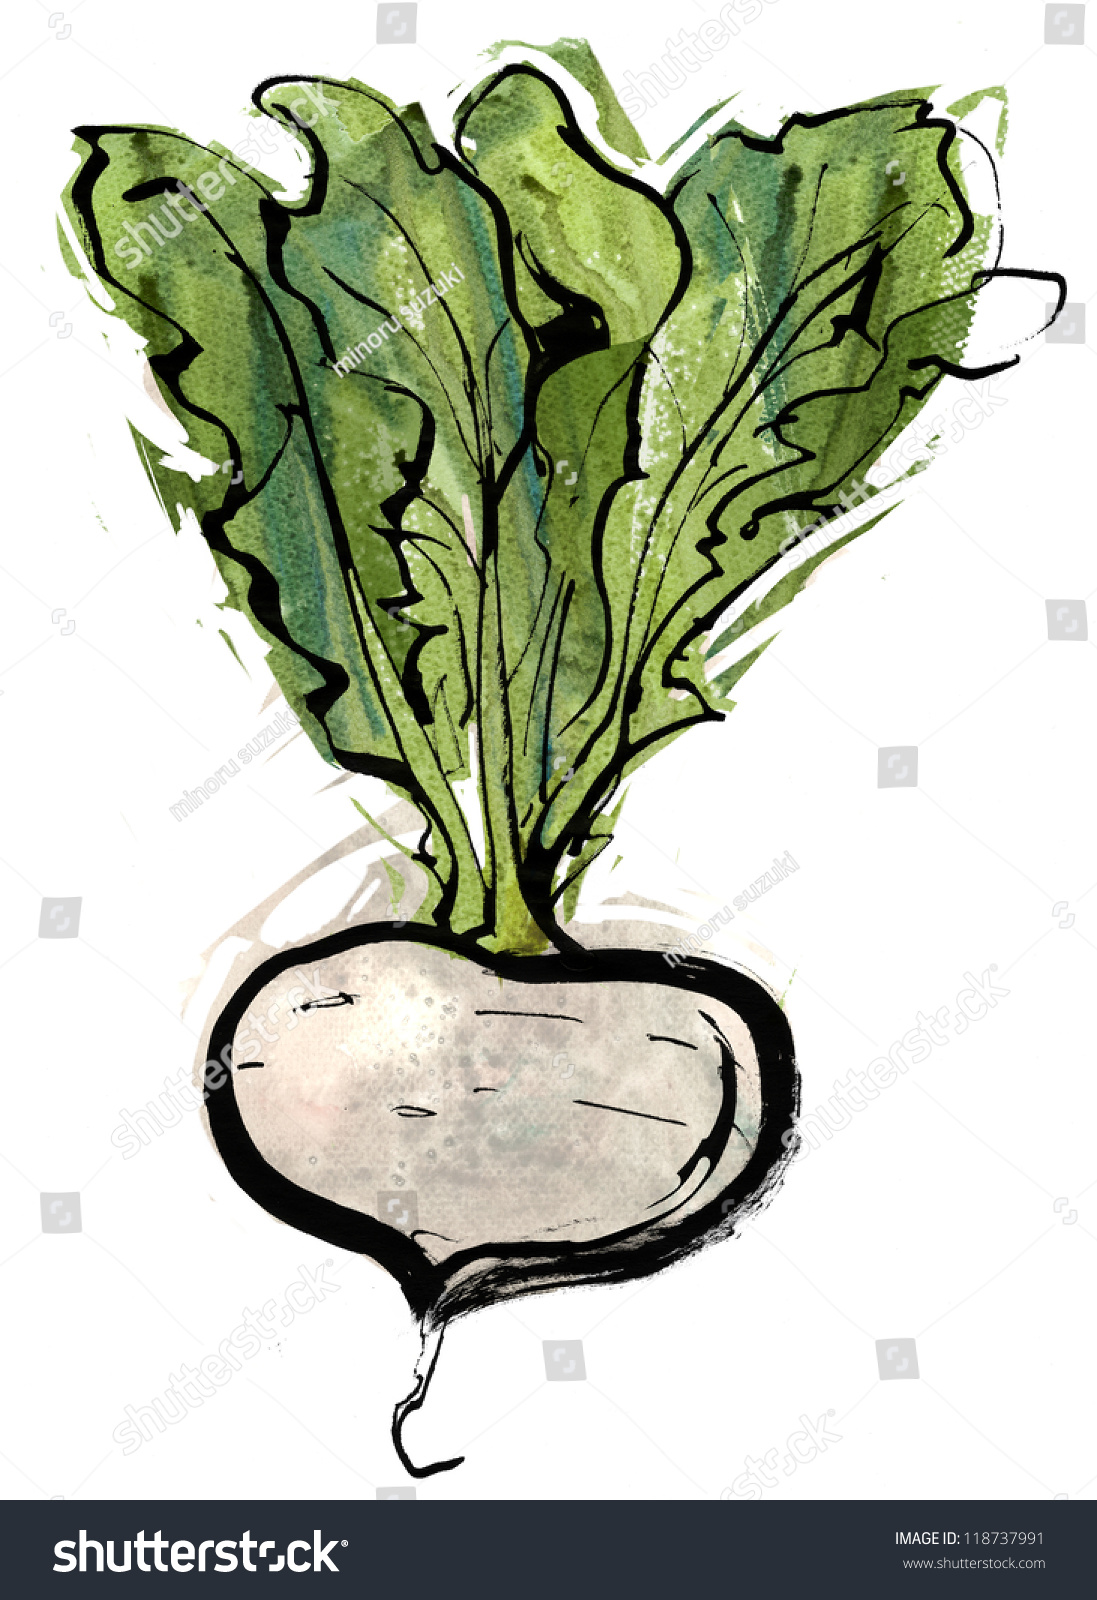 京野菜 のイラスト素材 画像 ベクター画像 Shutterstock